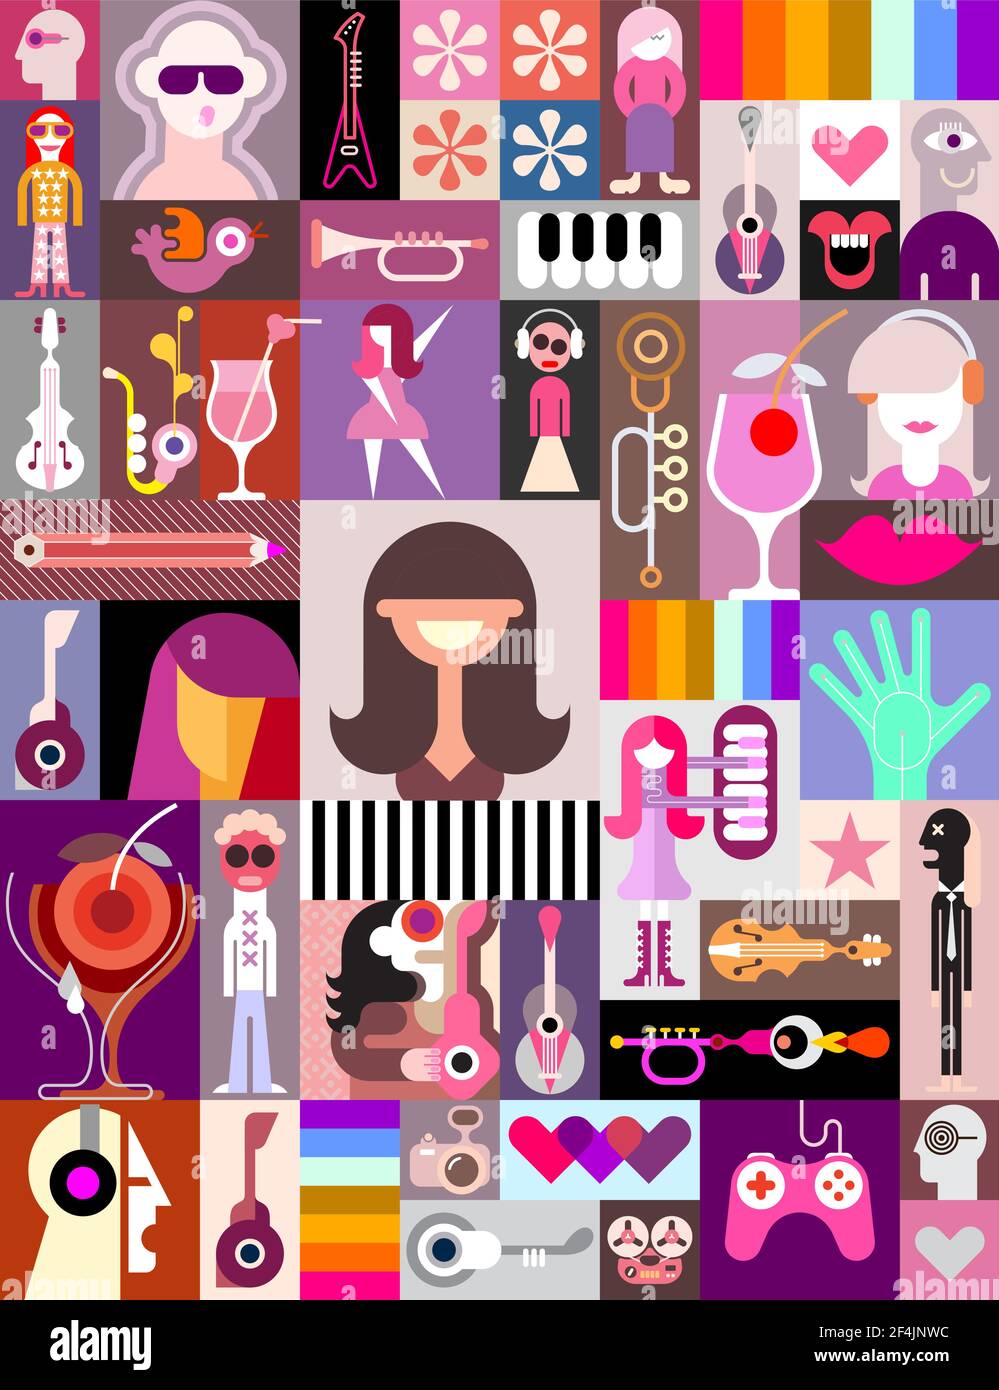 Pop Art Vektor Collage von Charakteren, Menschen Avatare und verschiedene  Objekte Stock-Vektorgrafik - Alamy